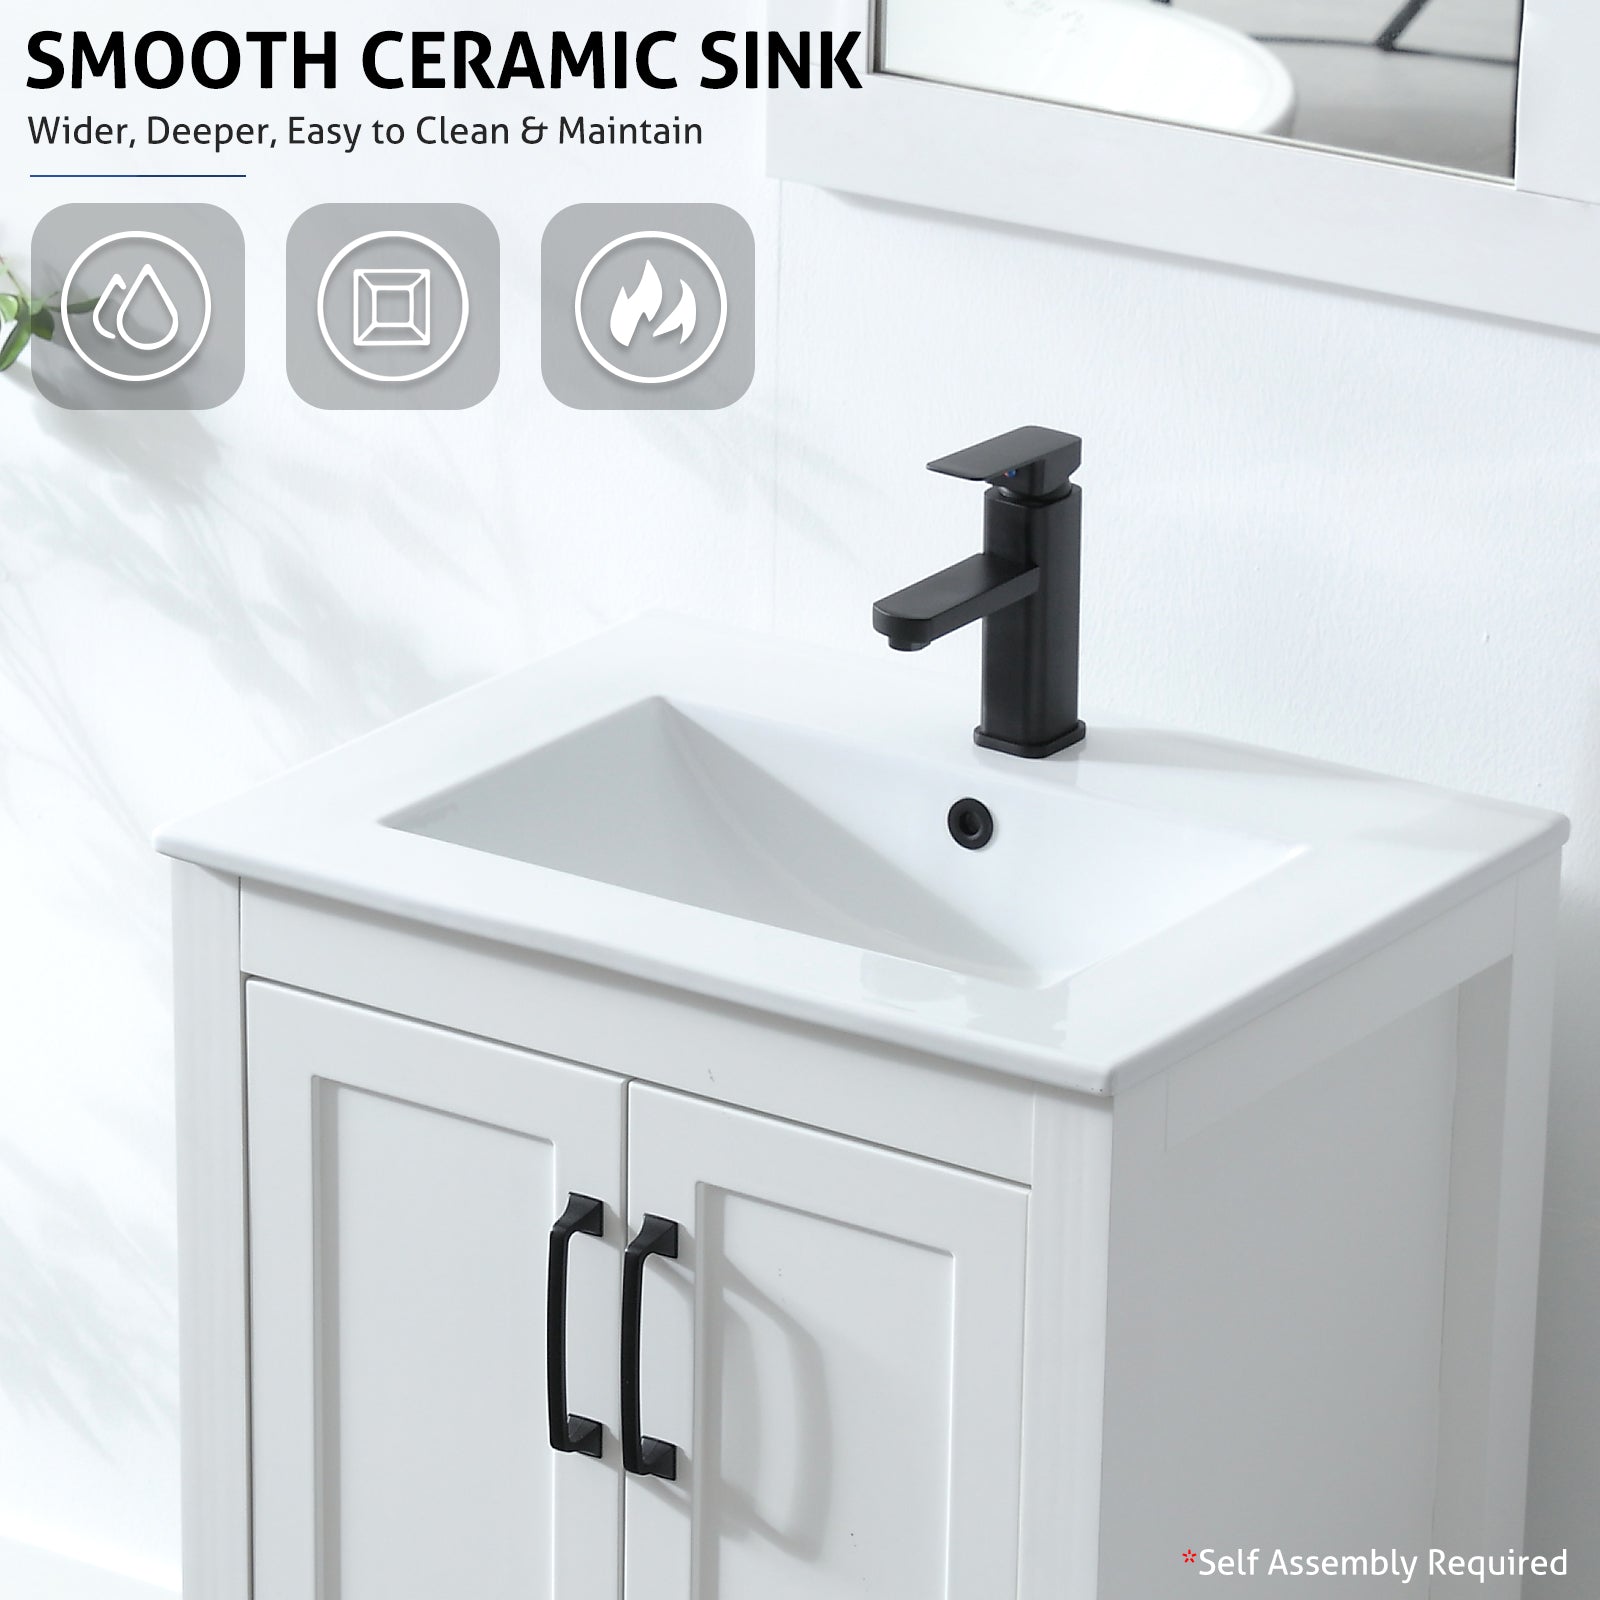 eclife 24" Bathroom Vanities Cabinet with Sink Combo Set, W/Mirror